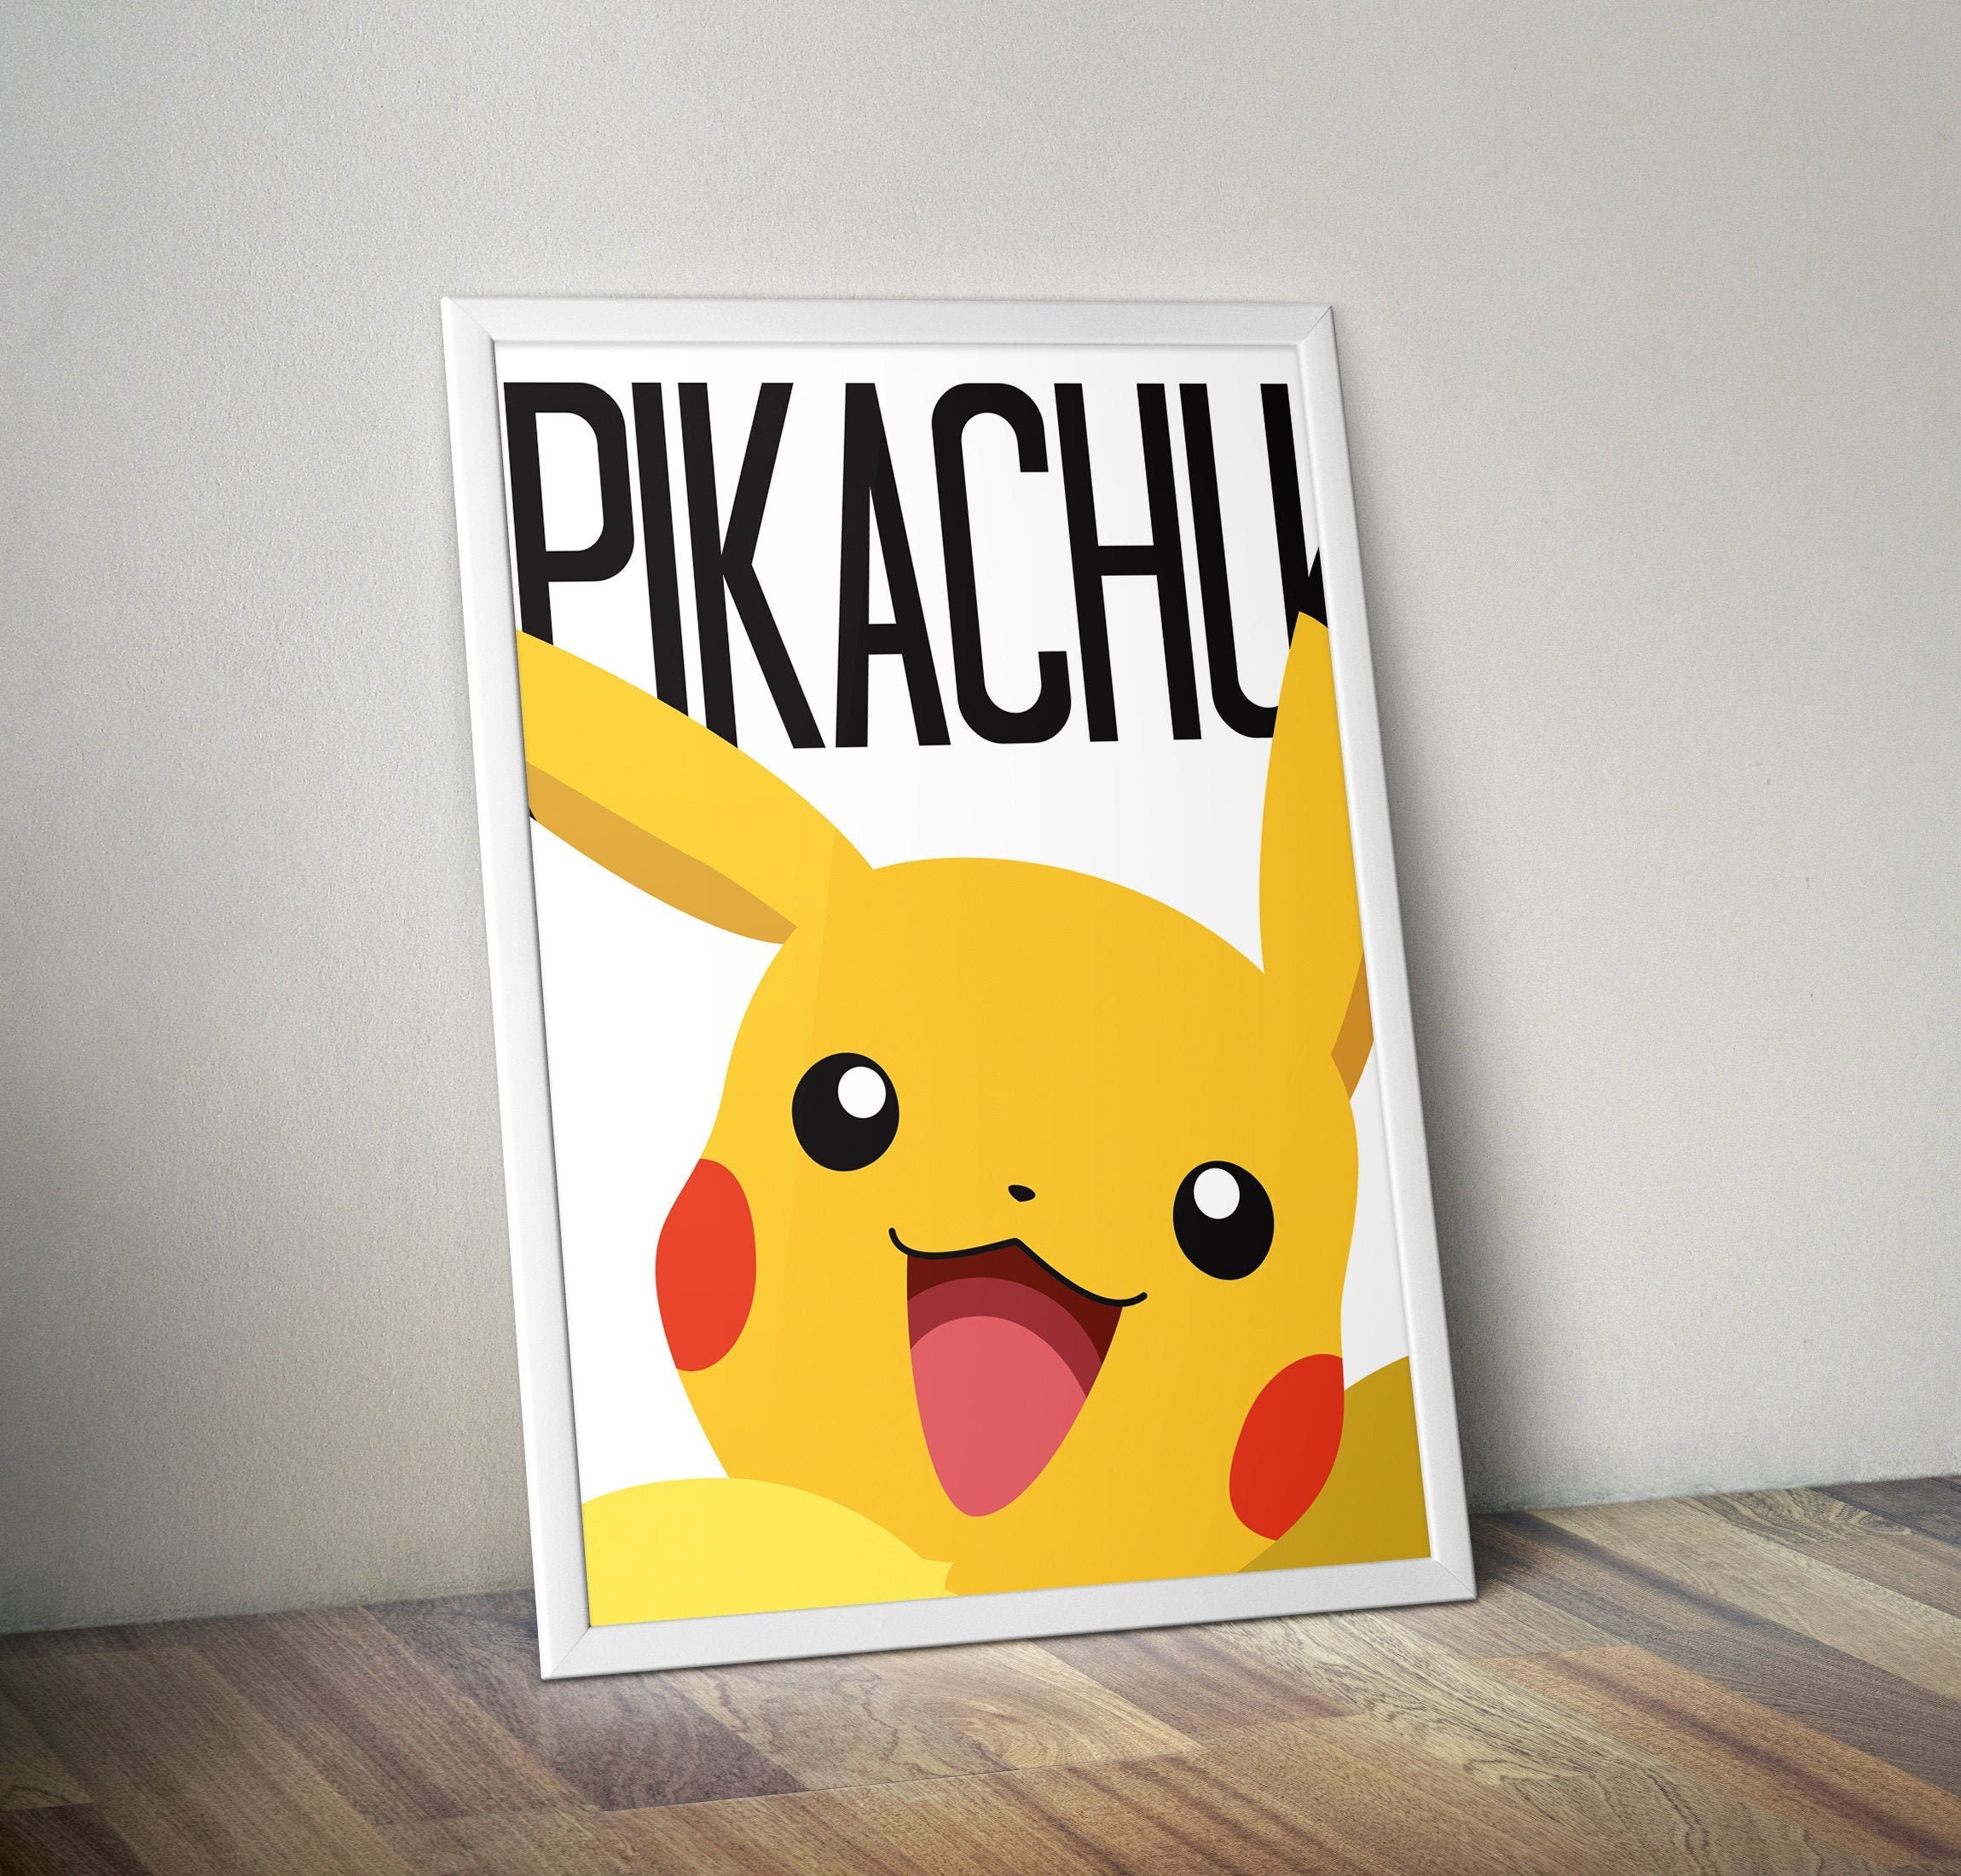 POKEMON - Pikachu - Poster '61x91.5cm